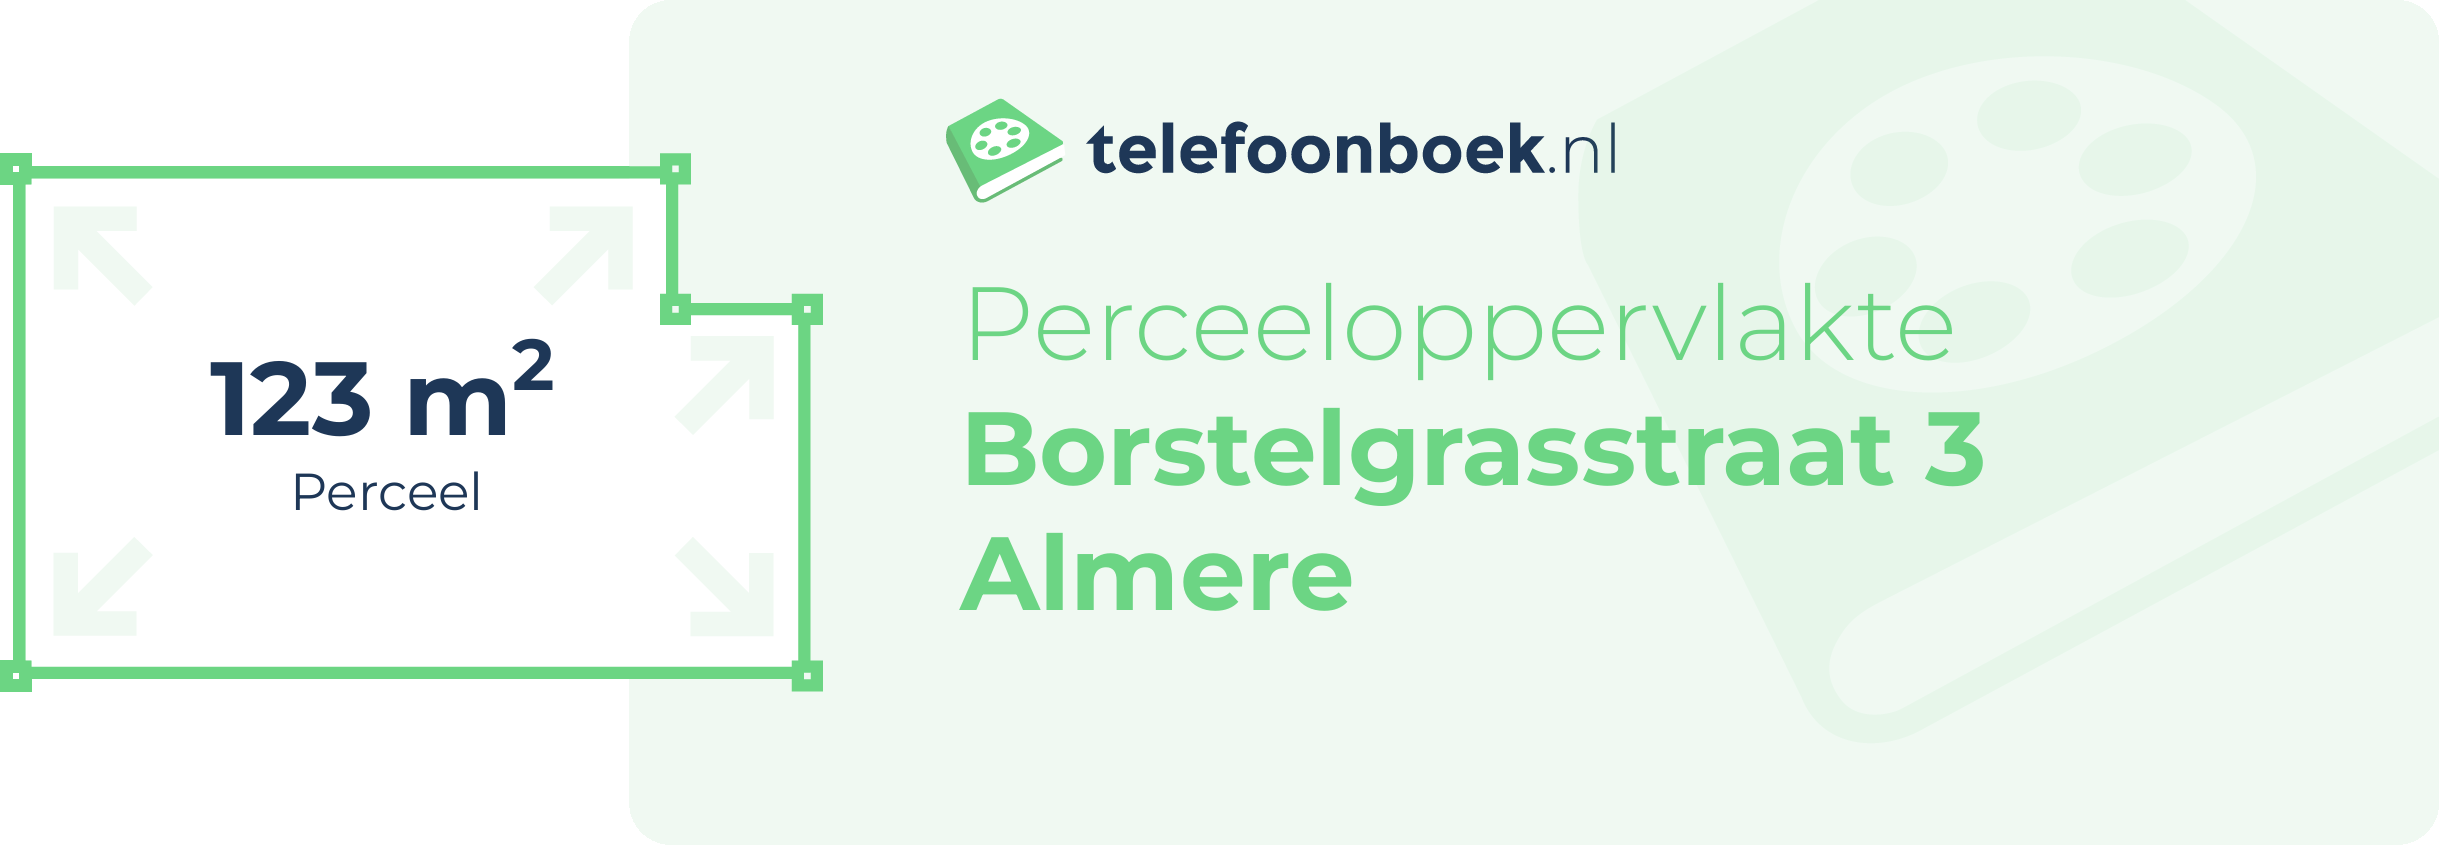 Perceeloppervlakte Borstelgrasstraat 3 Almere